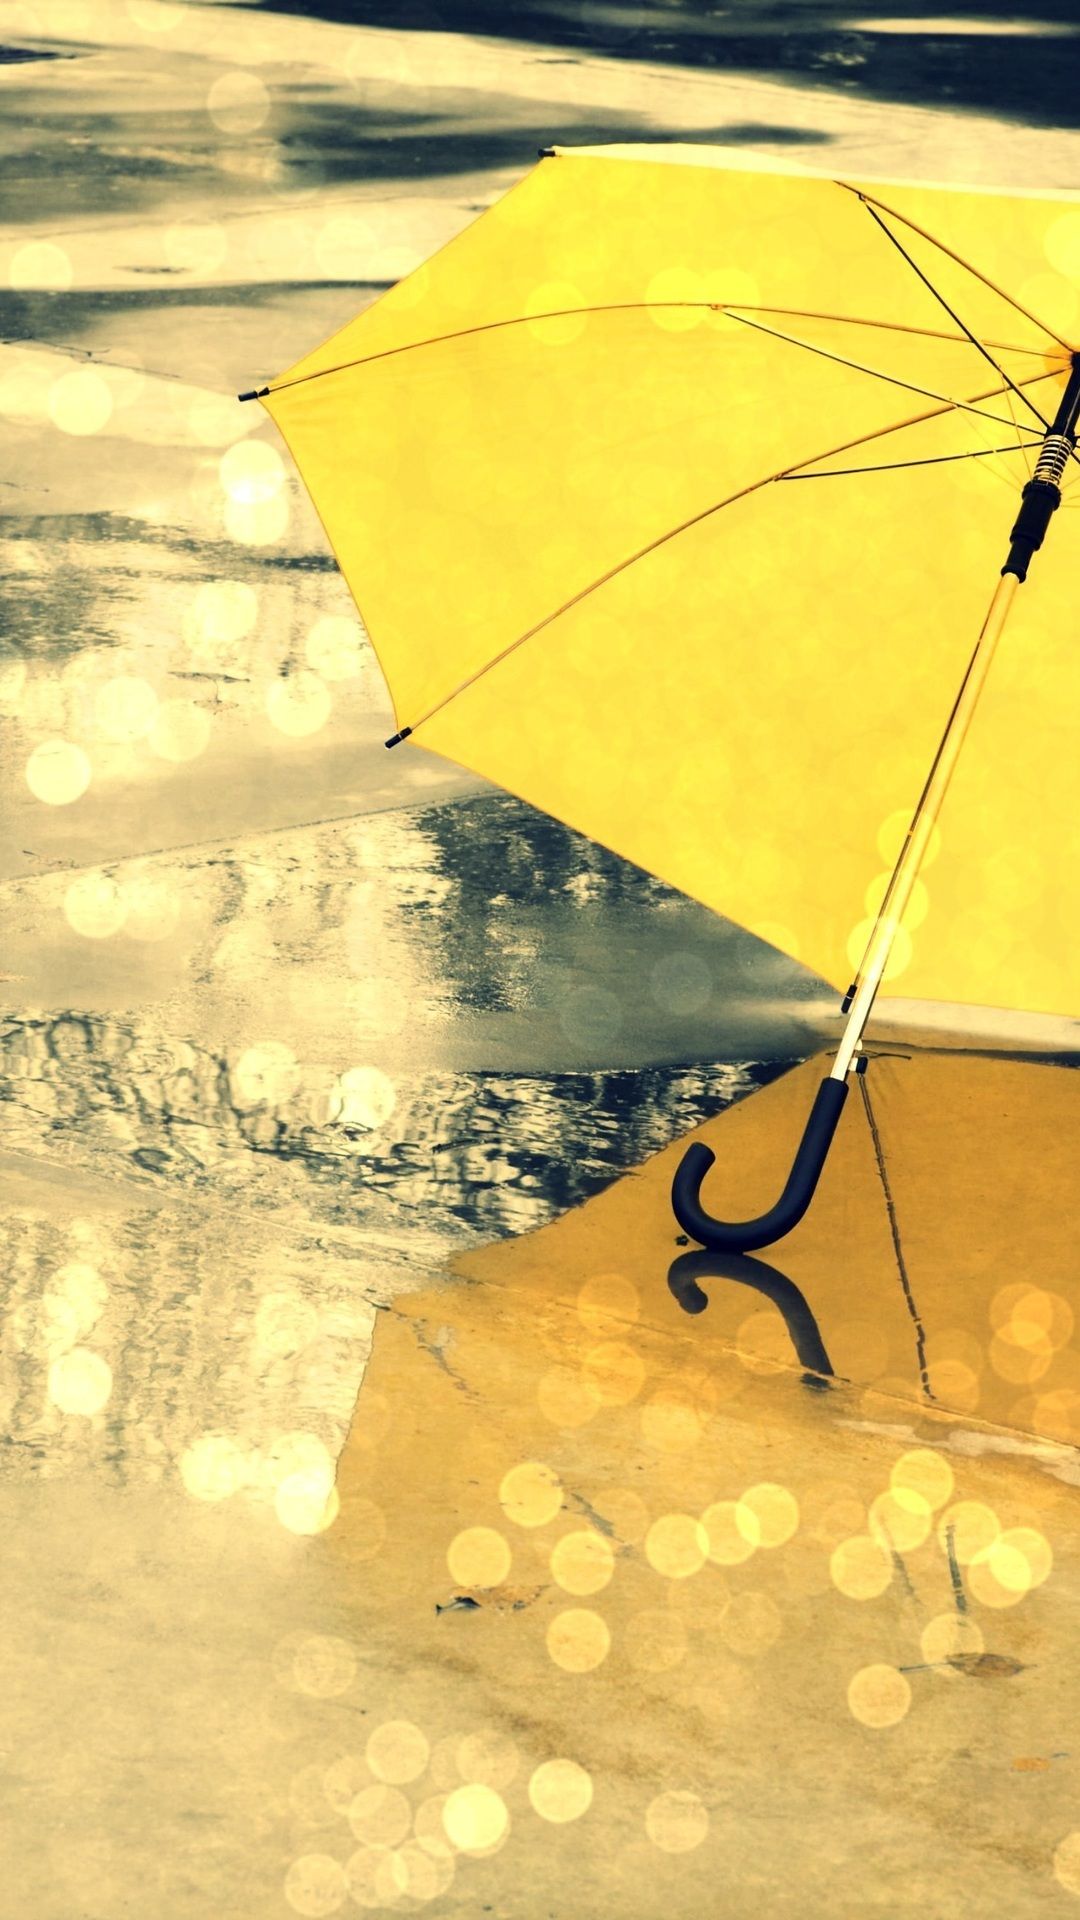 The Rain, Different, Umbrella, Yellow, Umbrella, Wet, Umbrella Wallpaper HD